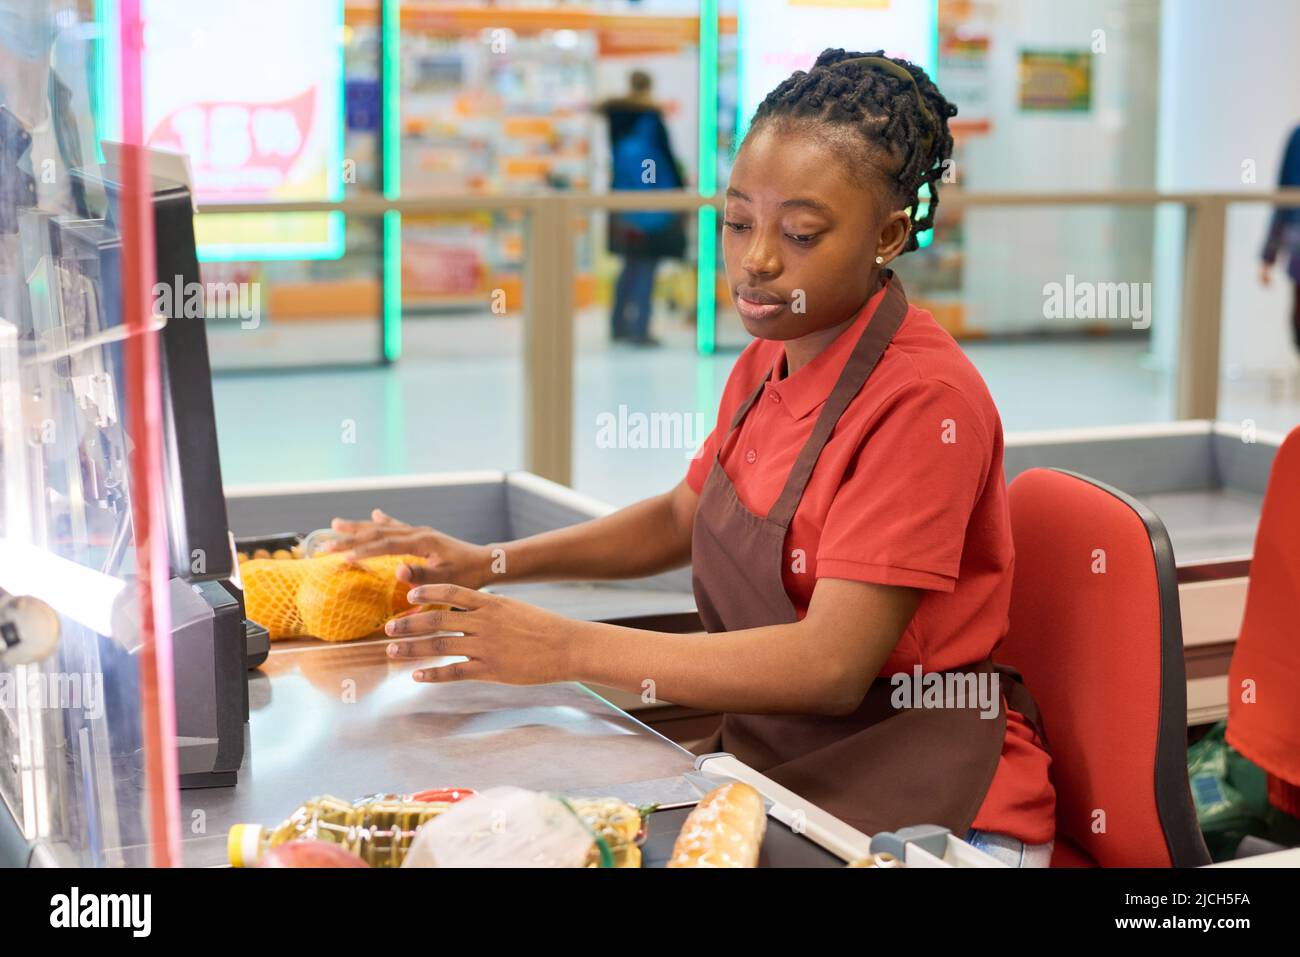 Junge schwarze Frau in Uniform scannt Lebensmittel und legt sie auf andere Seite der Theke, während sie an der Kasse im Supermarkt sitzt Stockfoto